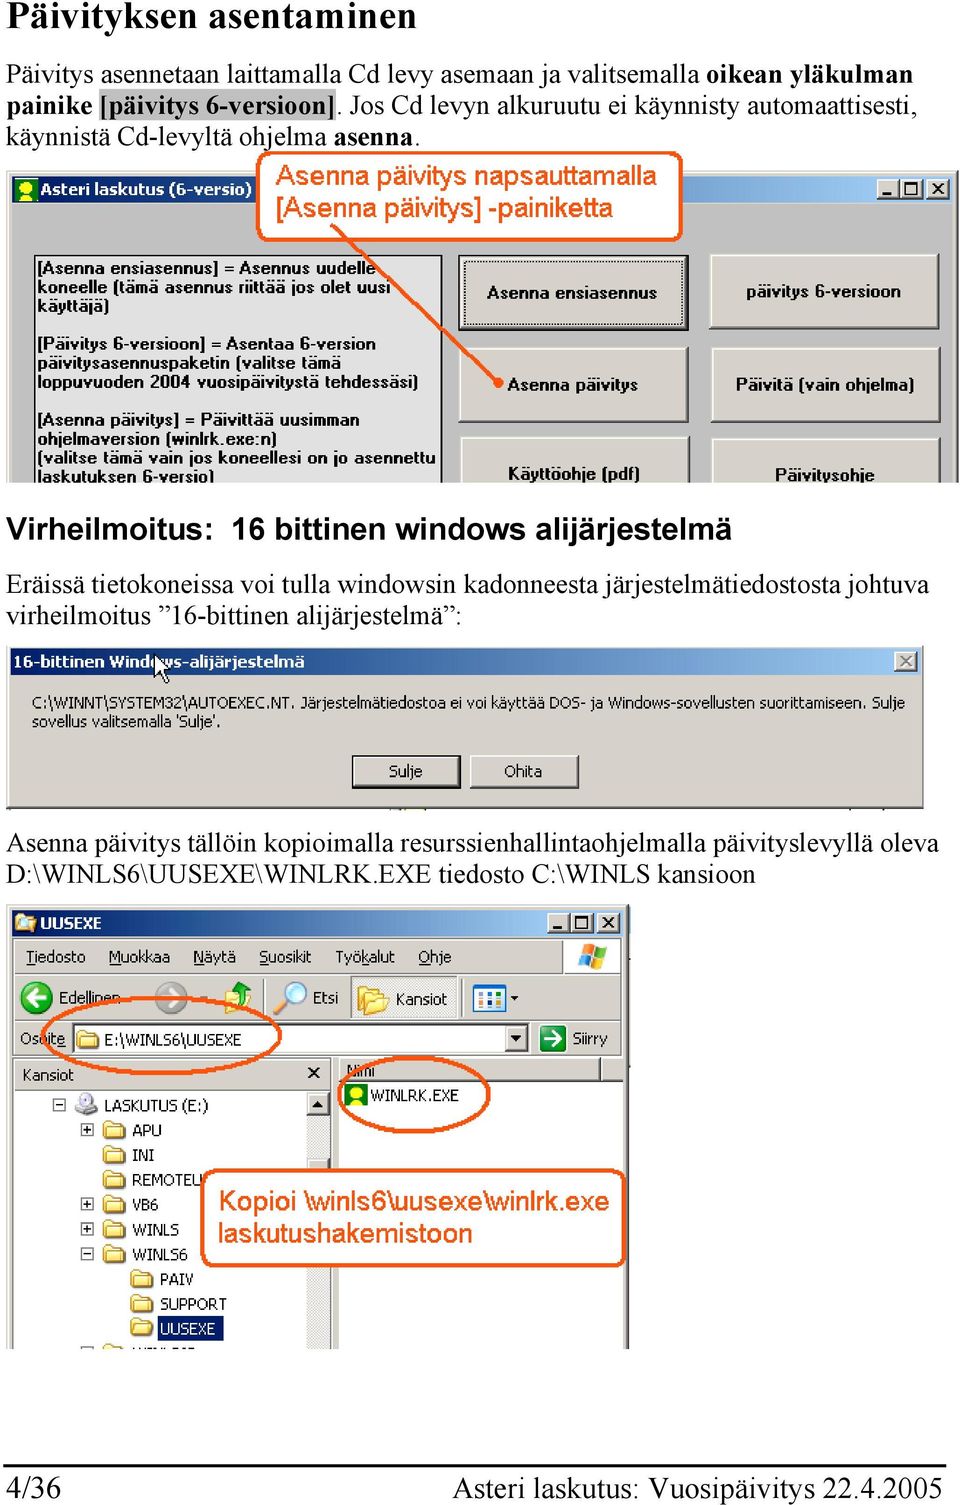 Virheilmoitus: 16 bittinen windows alijärjestelmä Eräissä tietokoneissa voi tulla windowsin kadonneesta järjestelmätiedostosta johtuva